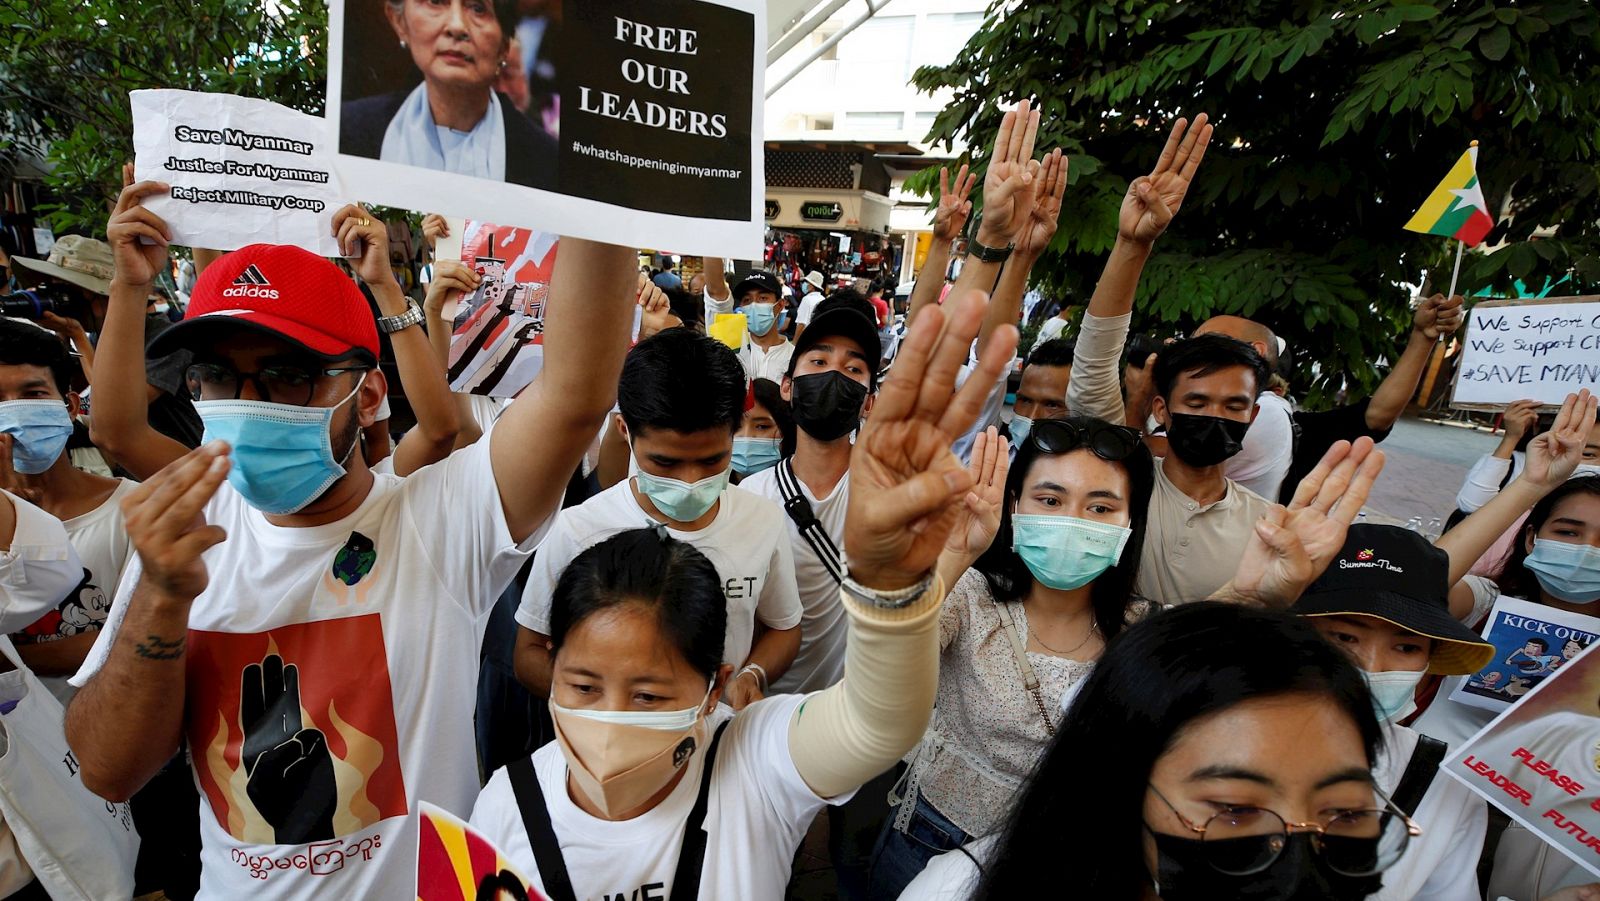 24 horas Fin de Semana - 20 horas - La comunidad internacional denuncia el aumento de la violencia en Birmania y estudia sanciones - Escuchar ahora